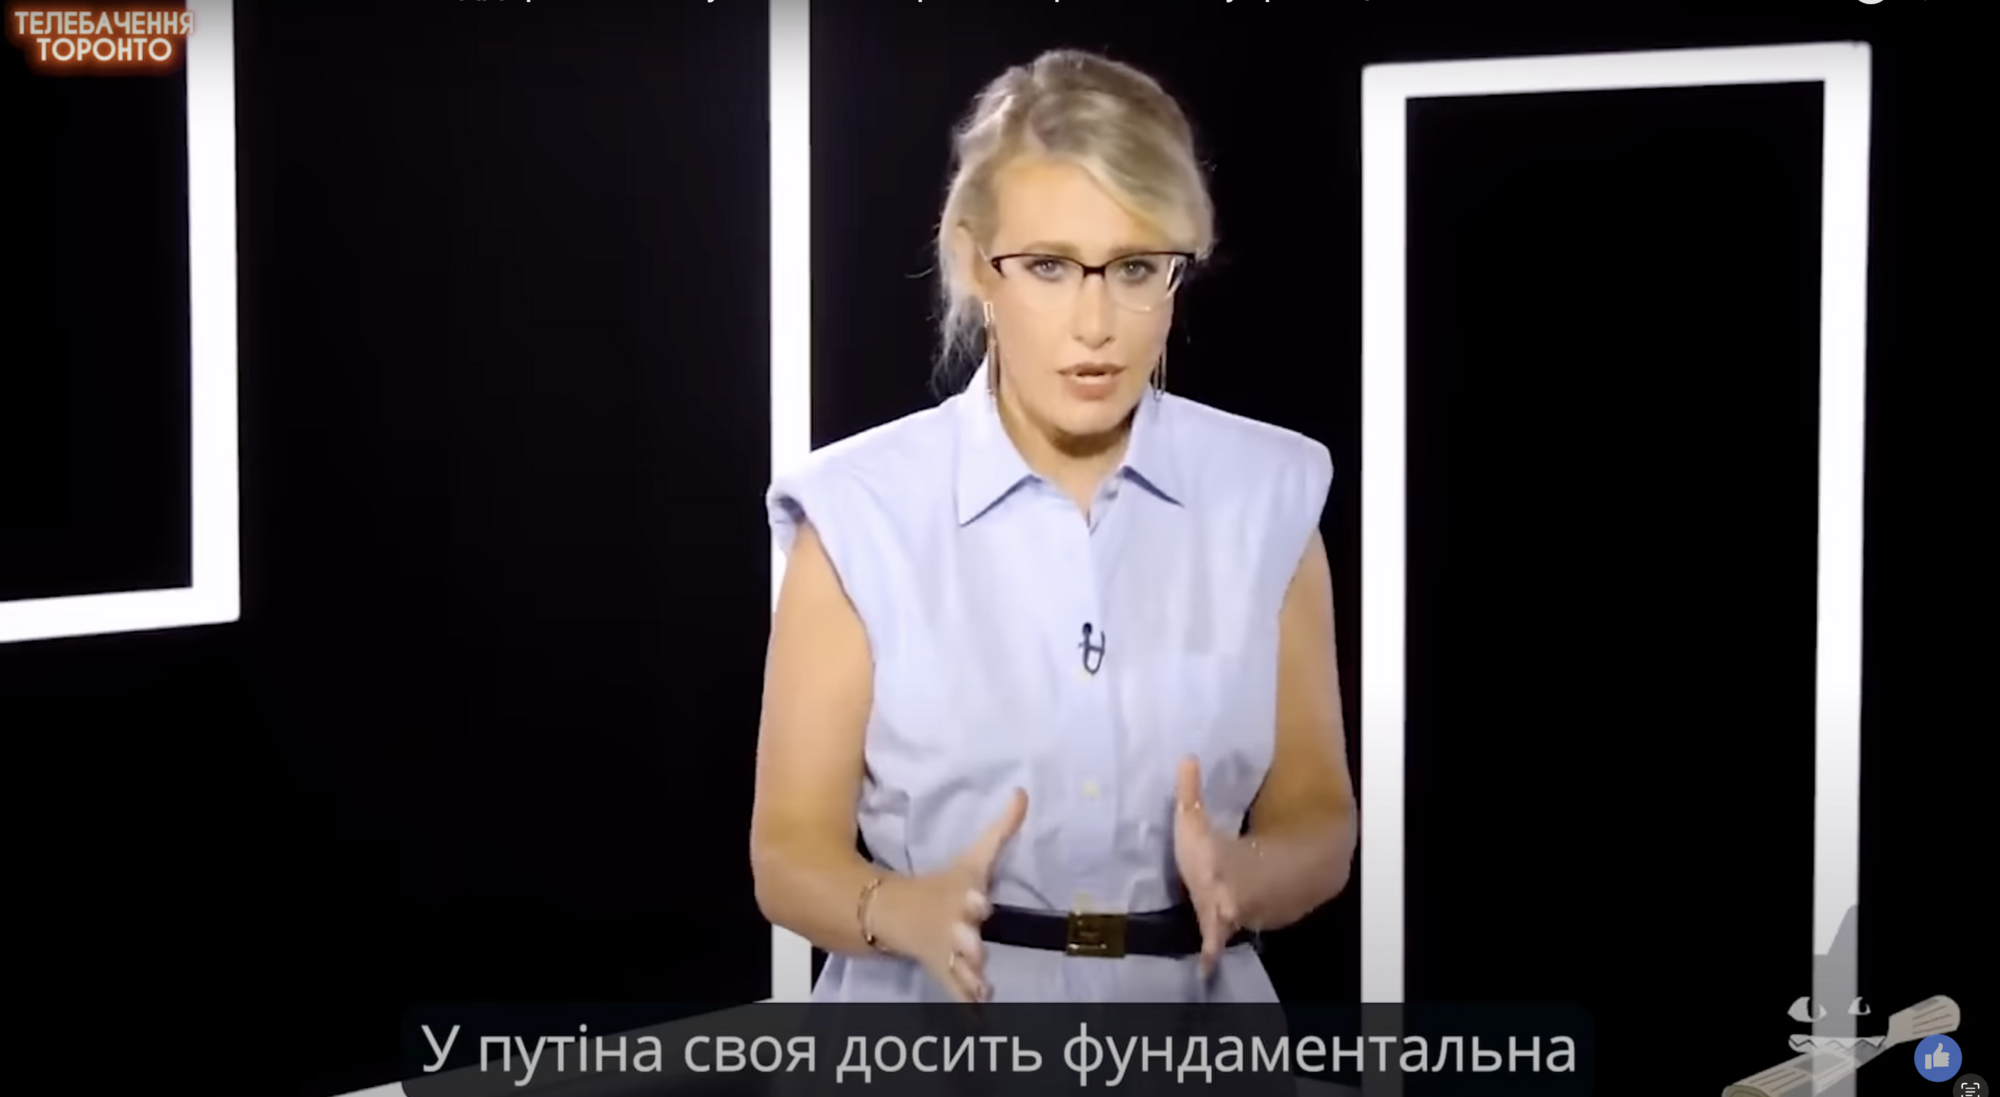 От "подружки Украины" до "бабки Путина": журналисты показали эволюцию Ксении Собчак. Видео